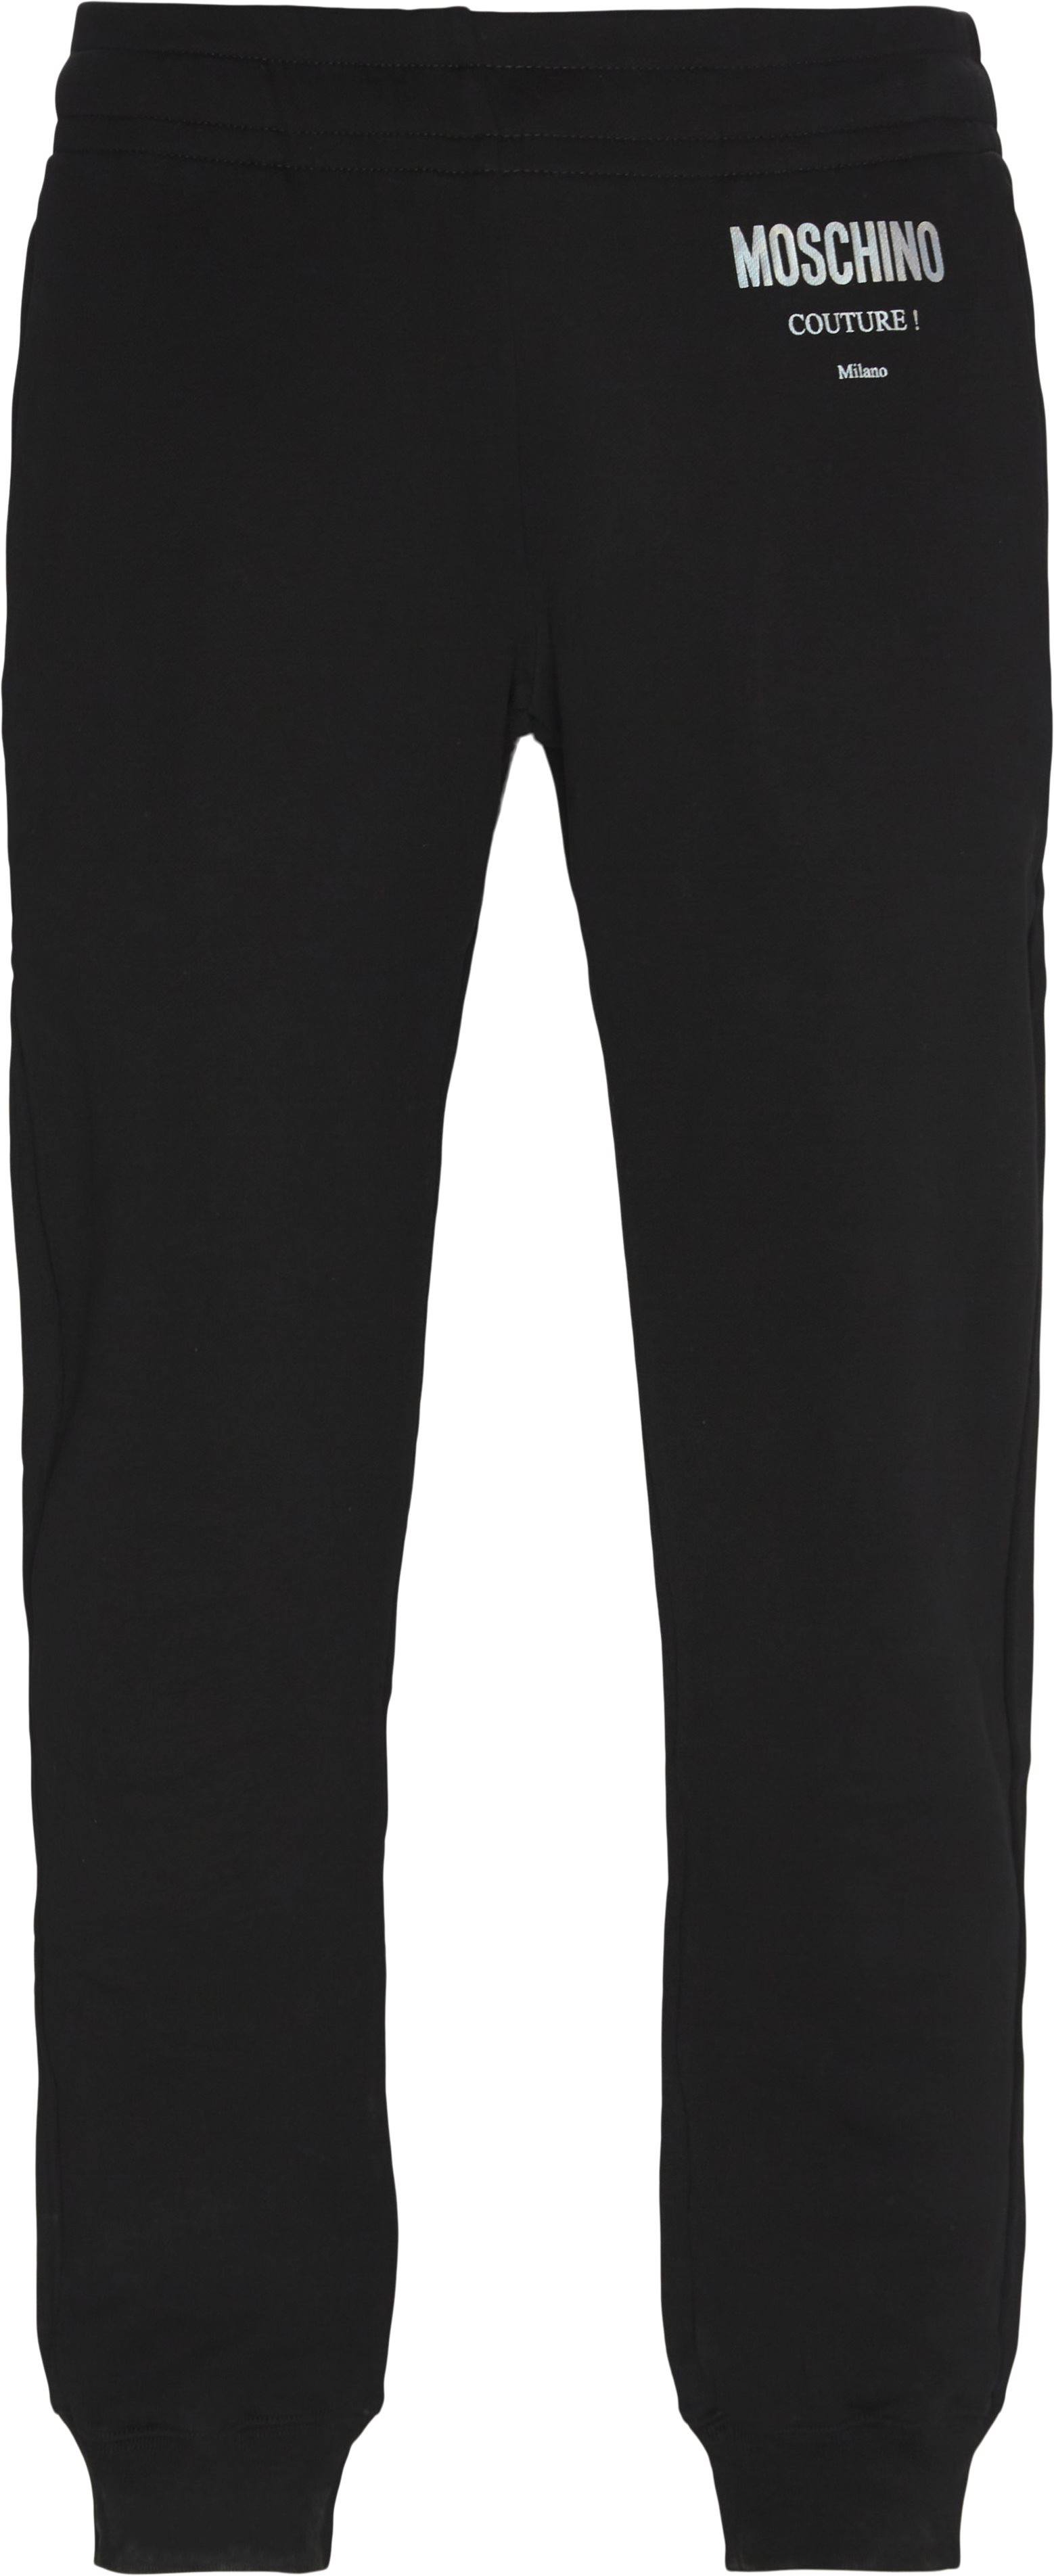 Trousers - Regular fit - Black